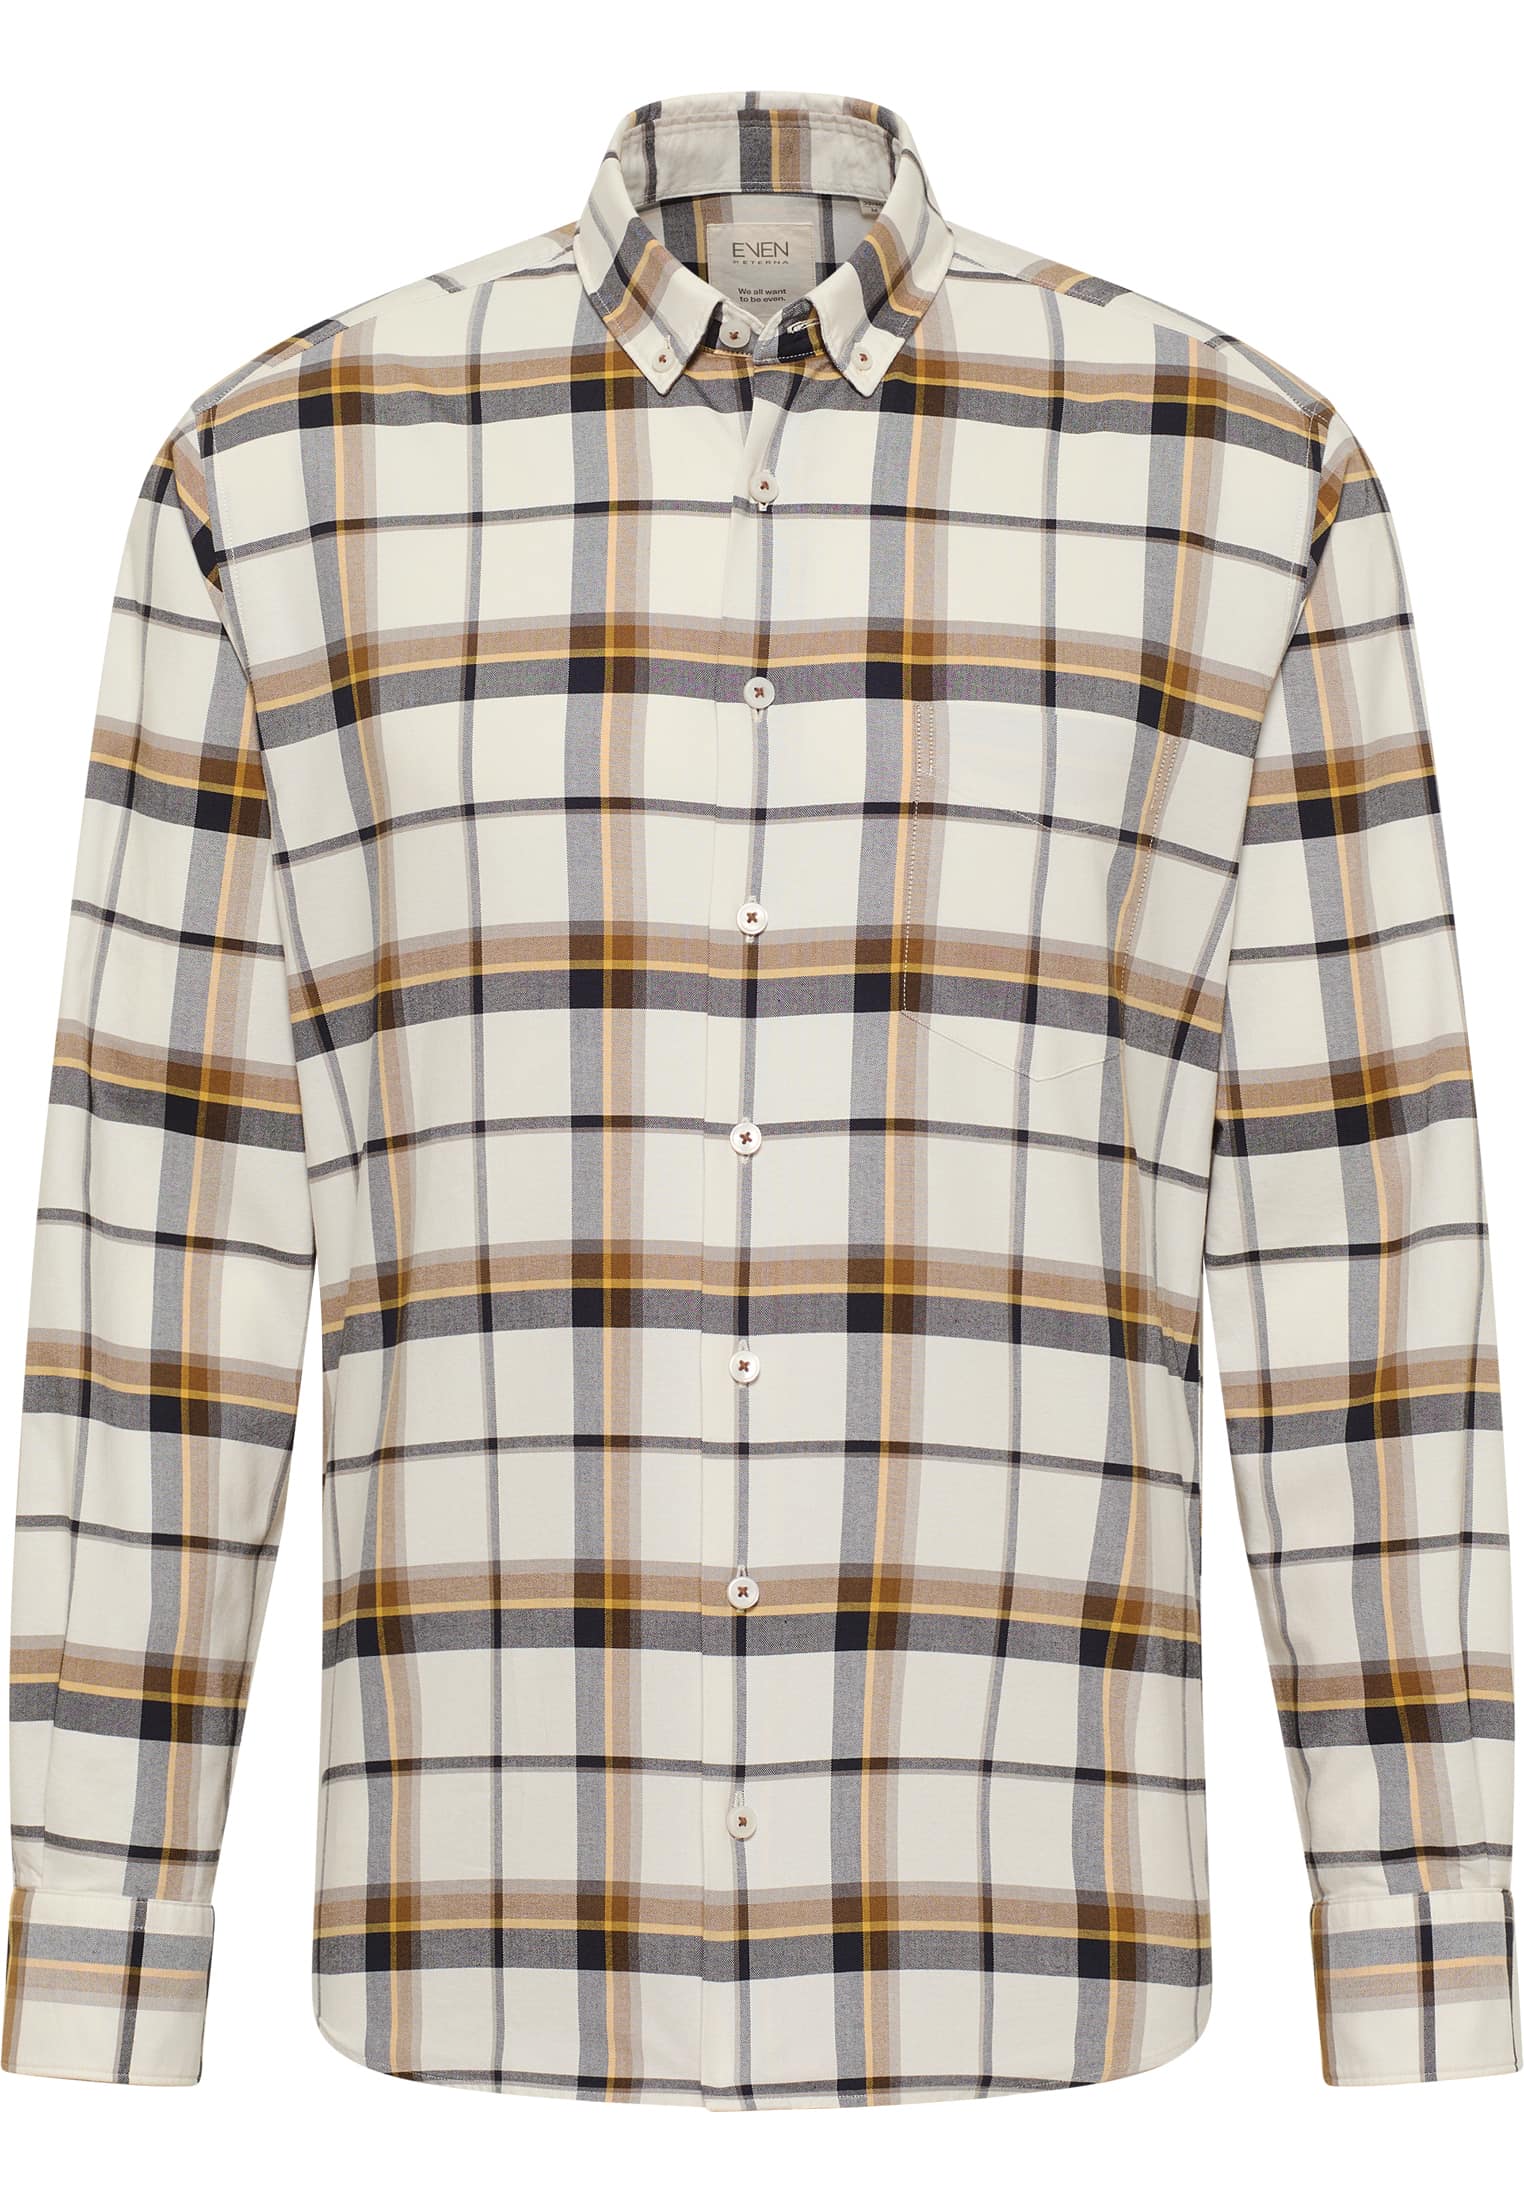 MODERN FIT Shirt in | checkered beige | long sleeve 1SH11420-02-01-XL-1/1 | | beige XL